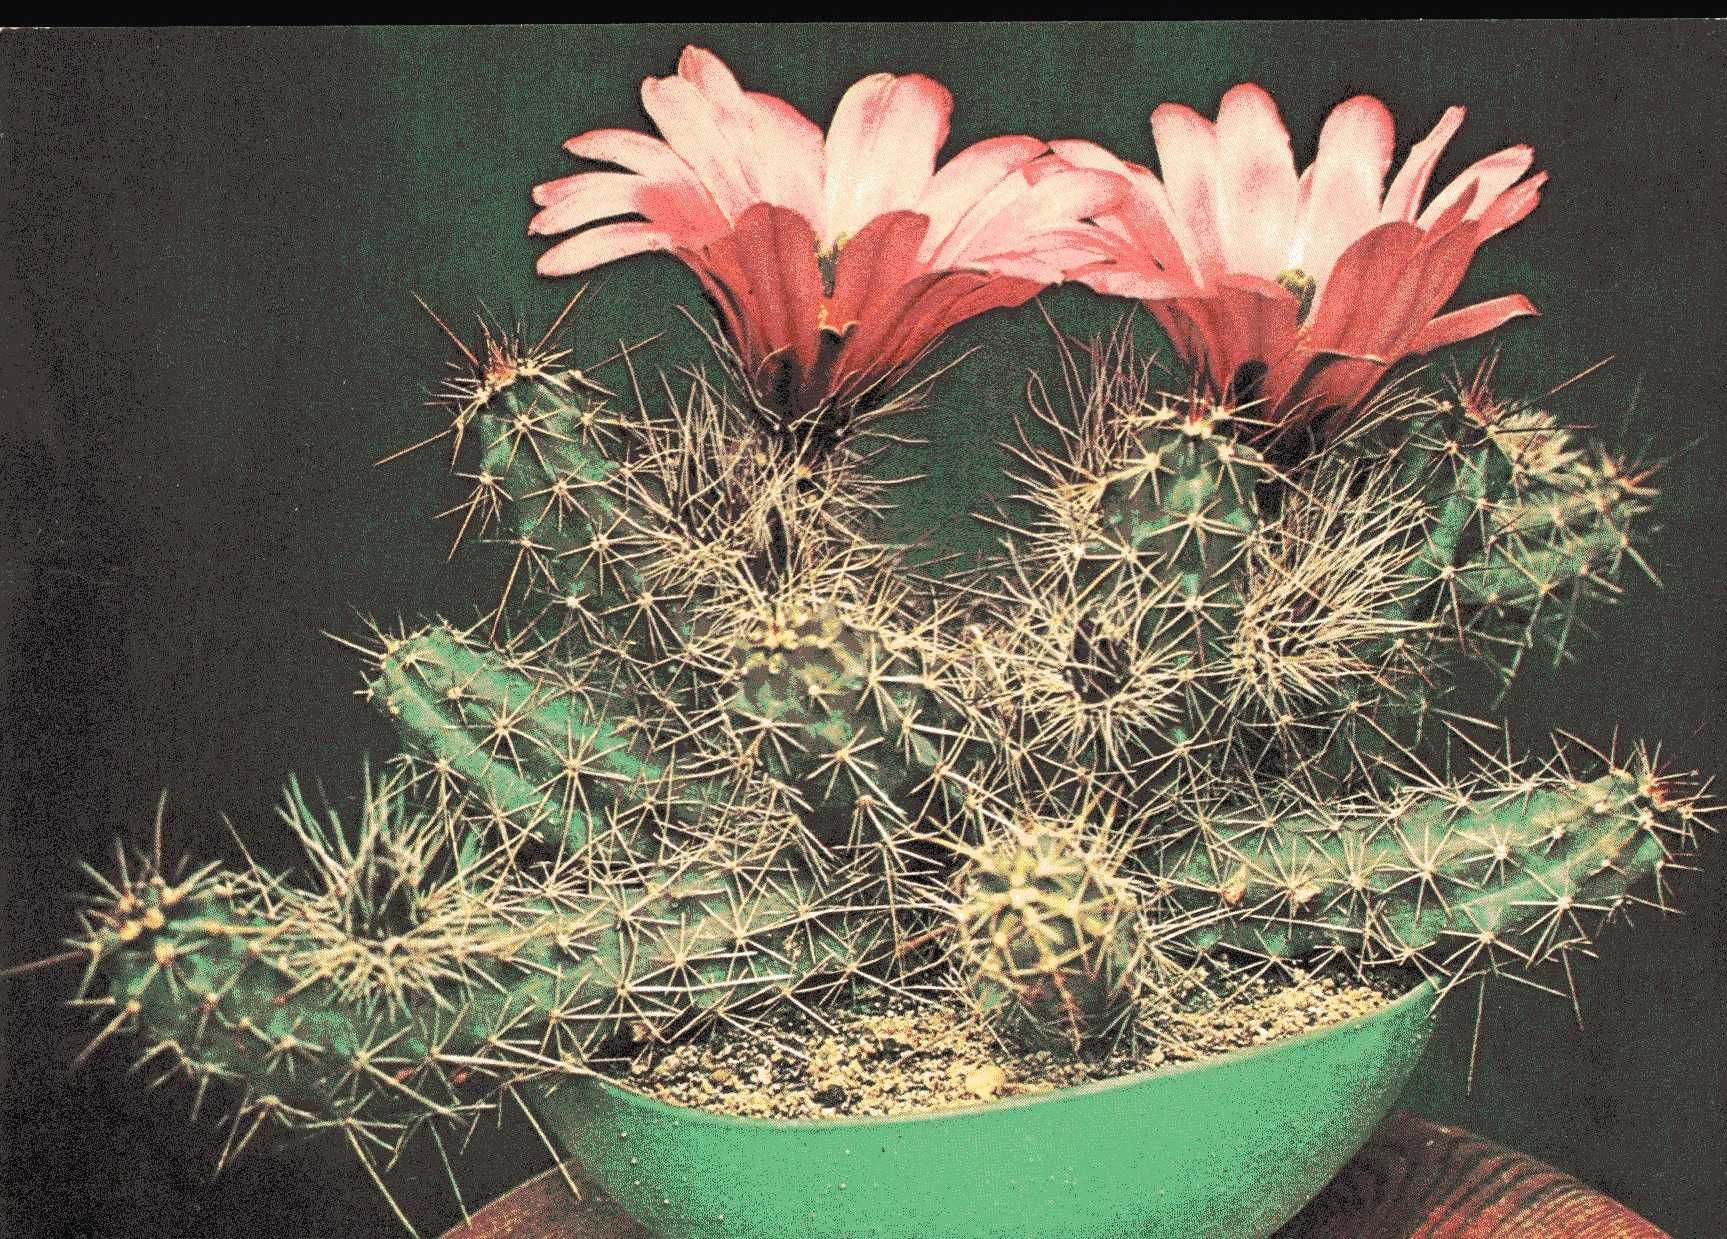 Kaktusy - zestaw pocztówek w obwolucie